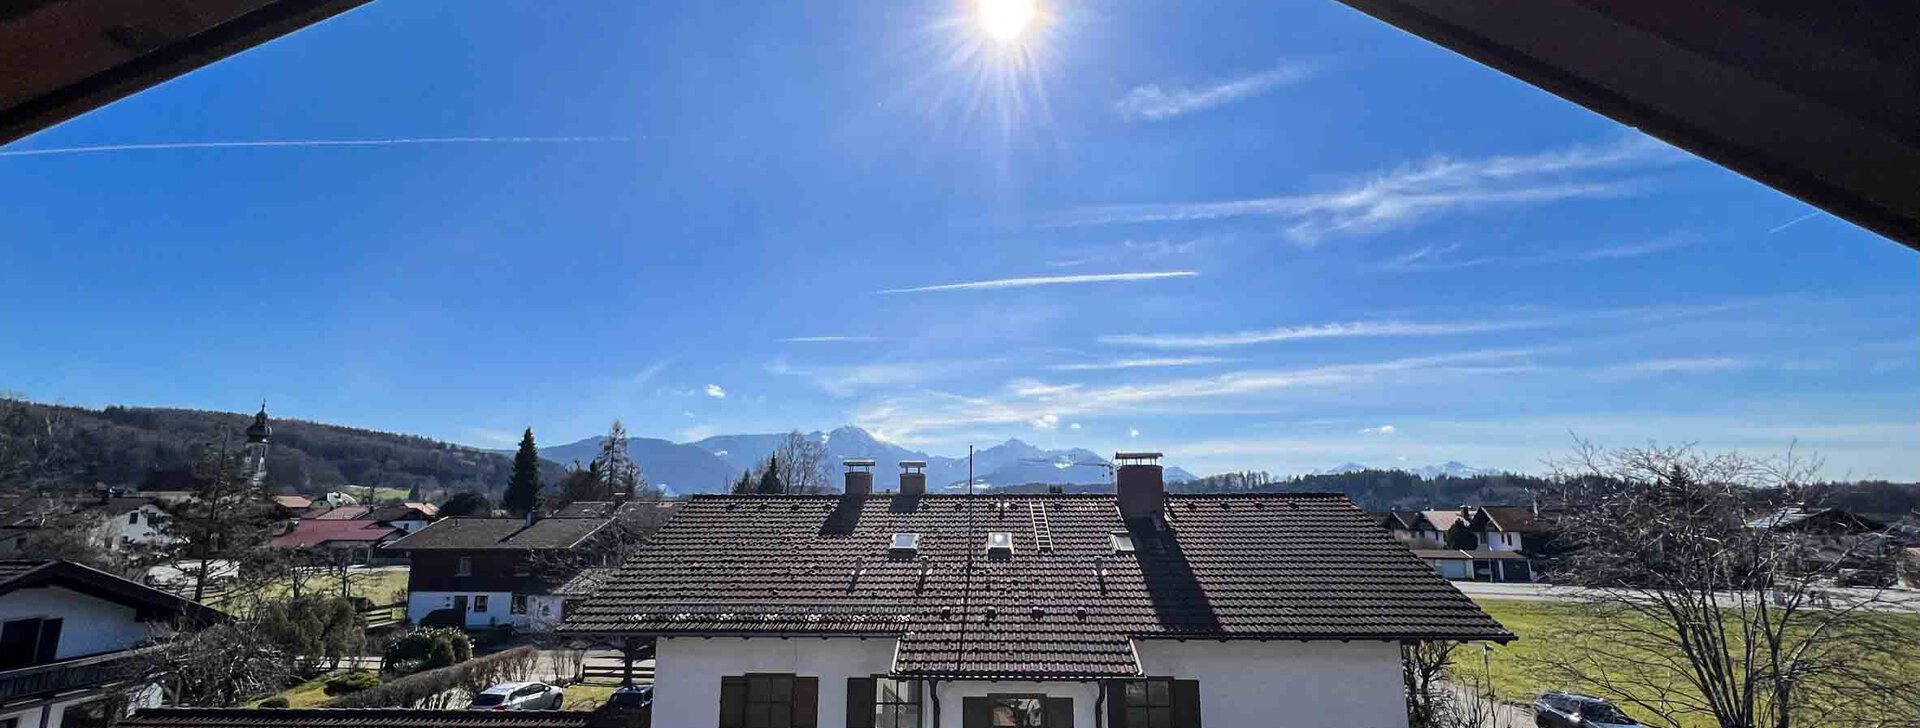 Ausblick, Dachgeschoss Wohnung mit Bergblick, Immobilie kaufen, Vachendorf | © HausBauHaus GmbH